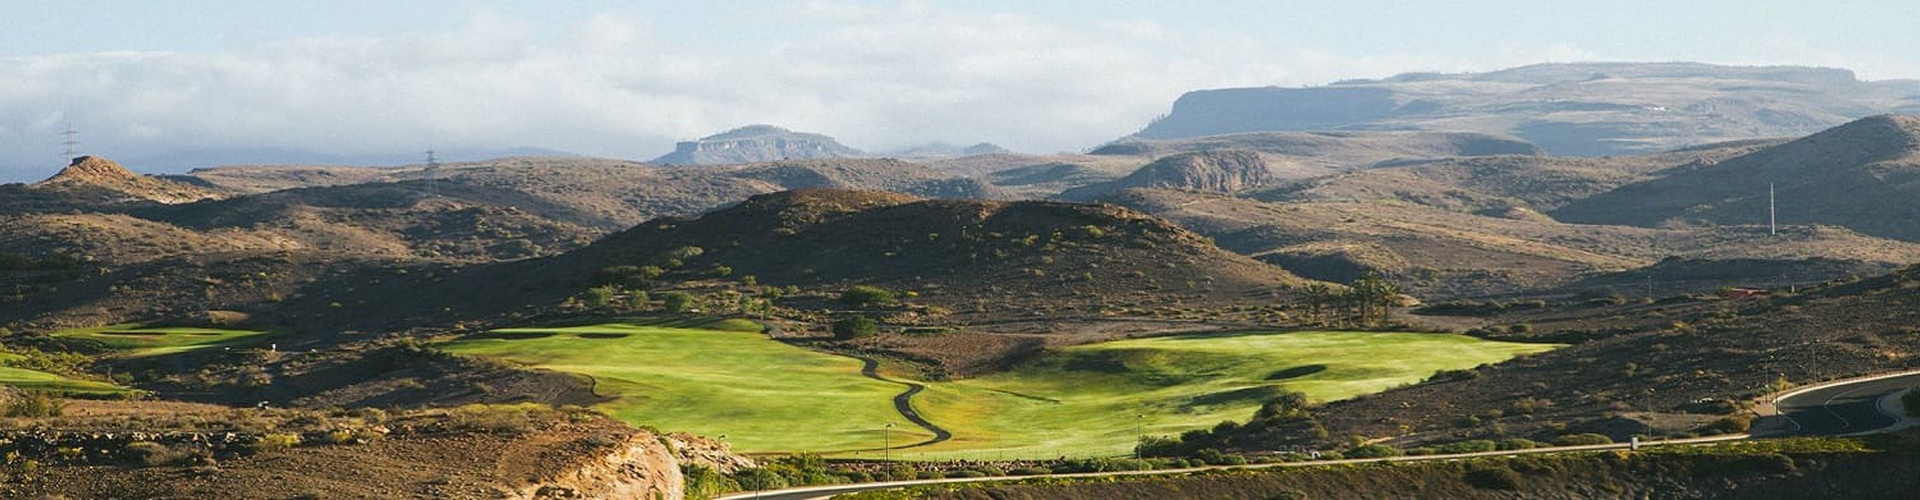 Salobre Gran Canaria Golf Resort - Maspalomas - 